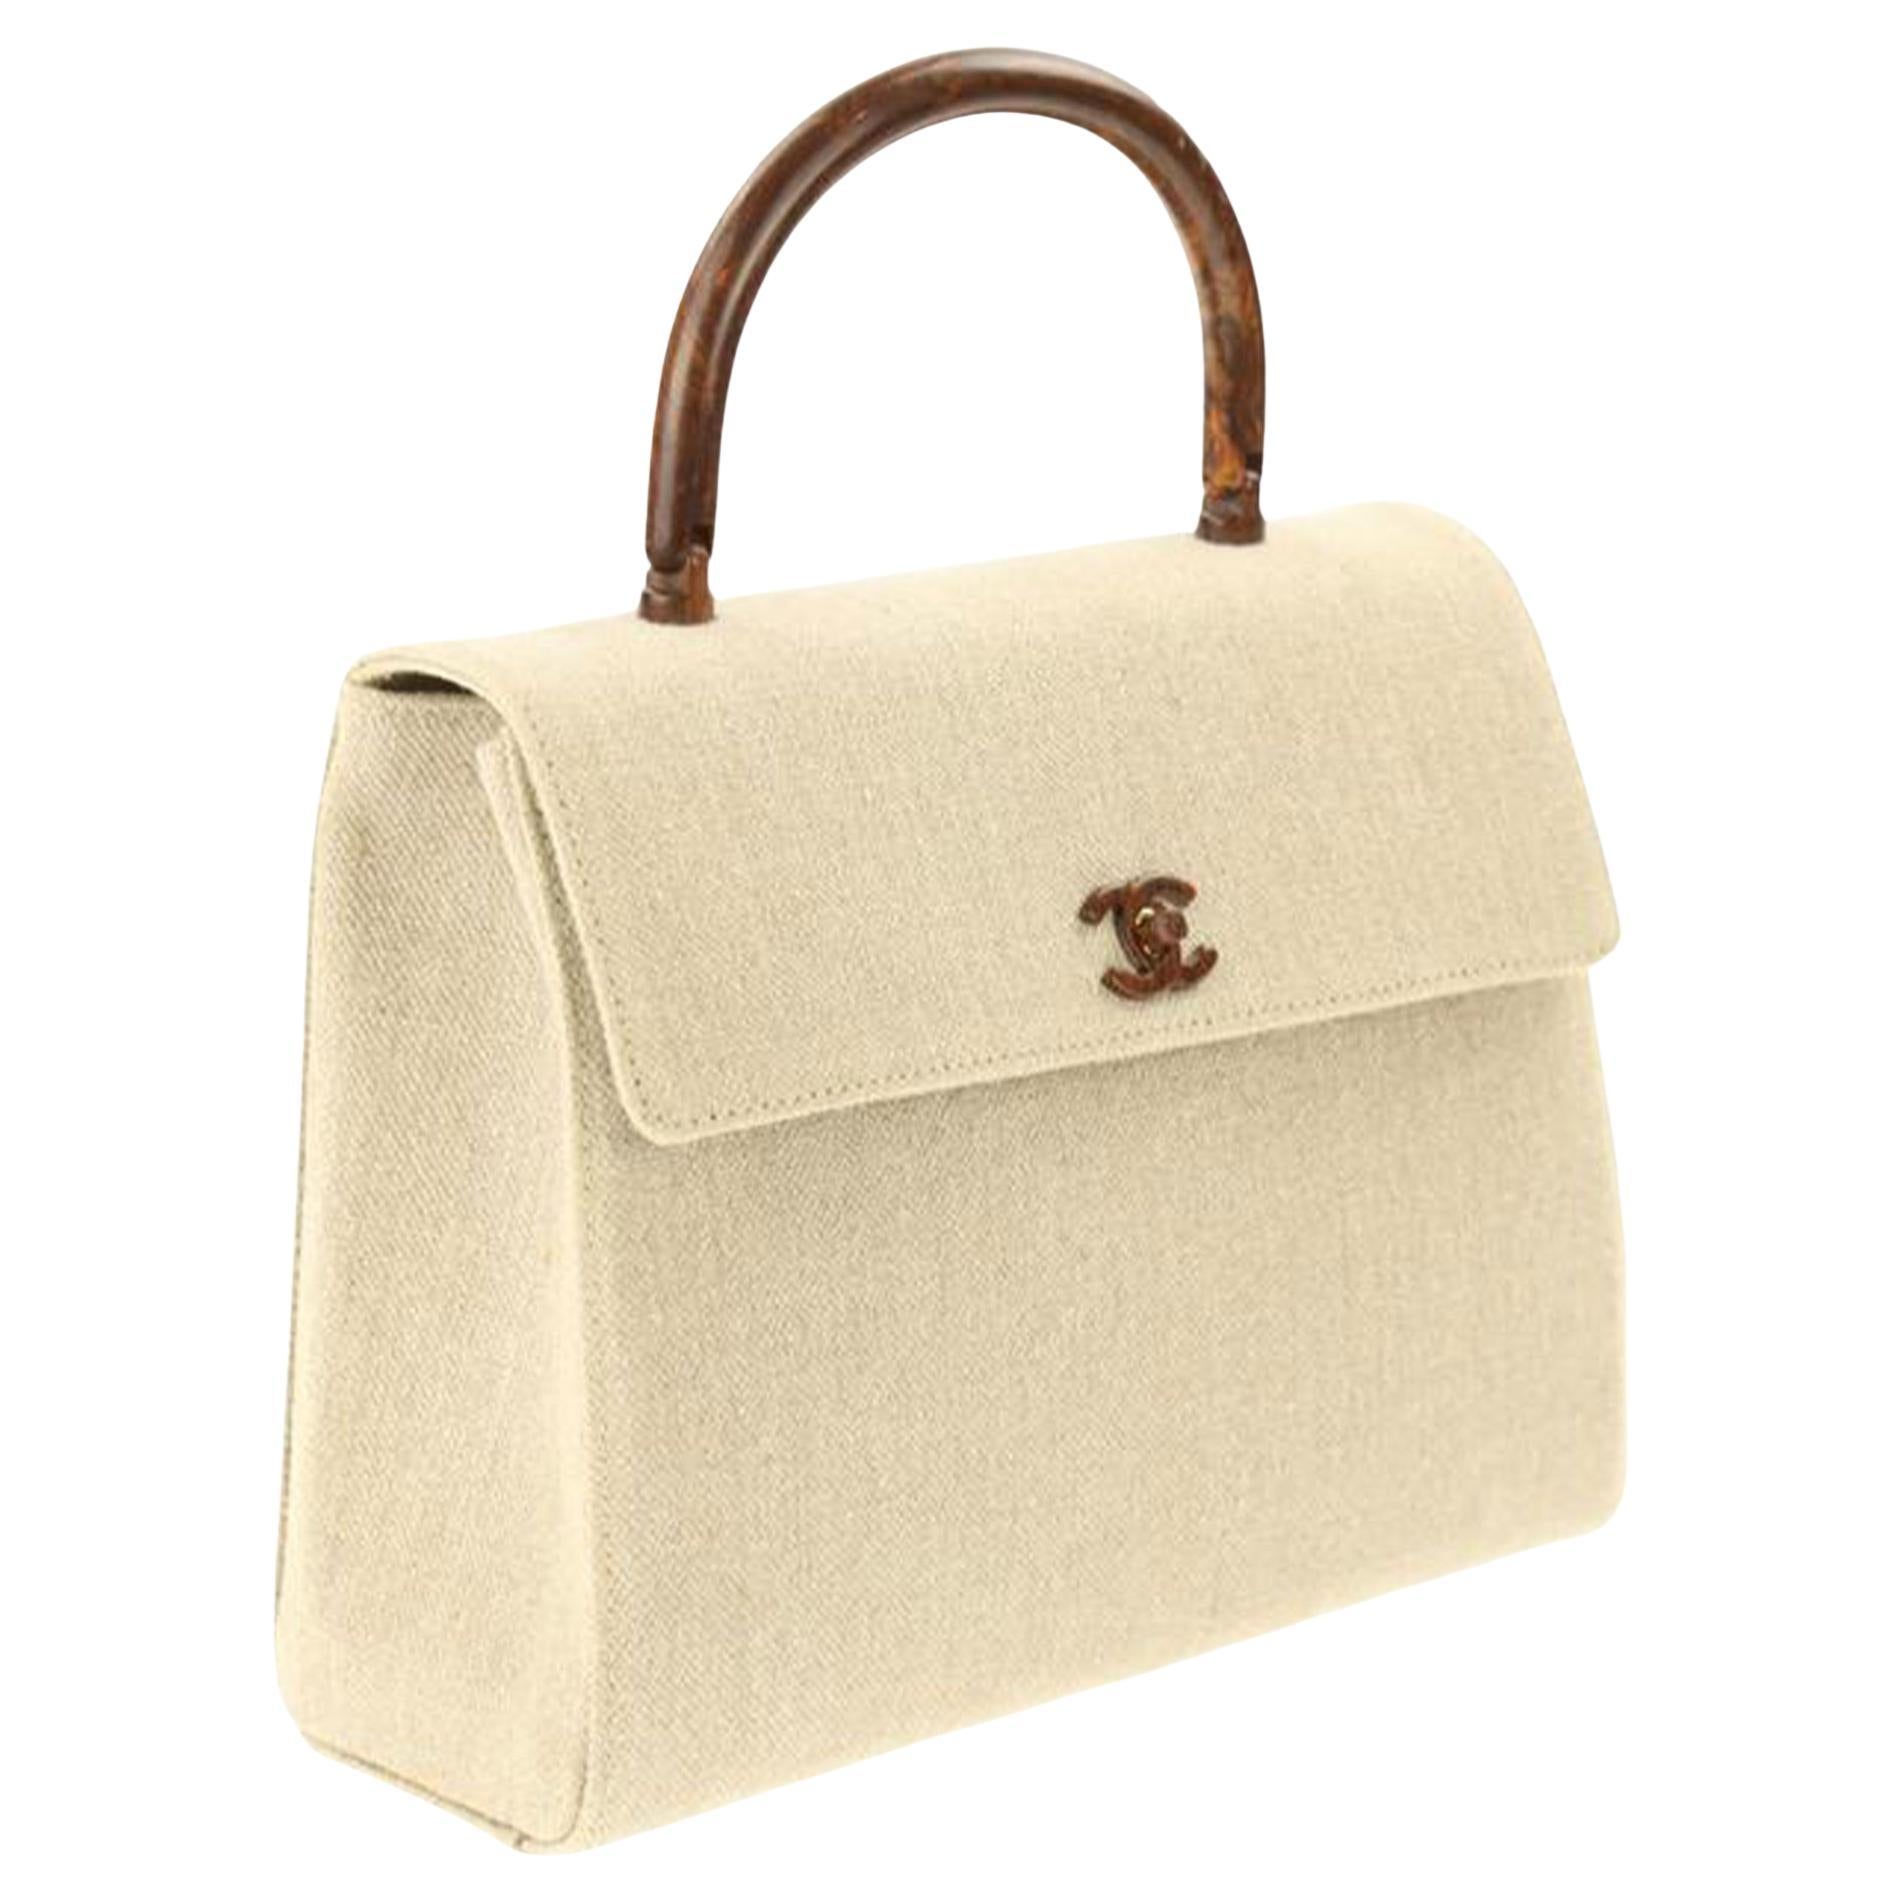 Wood Handle Chanel Bag - 2 For Sale on 1stDibs  chanel wood handle bag, chanel  bag wood, wooden chanel bag